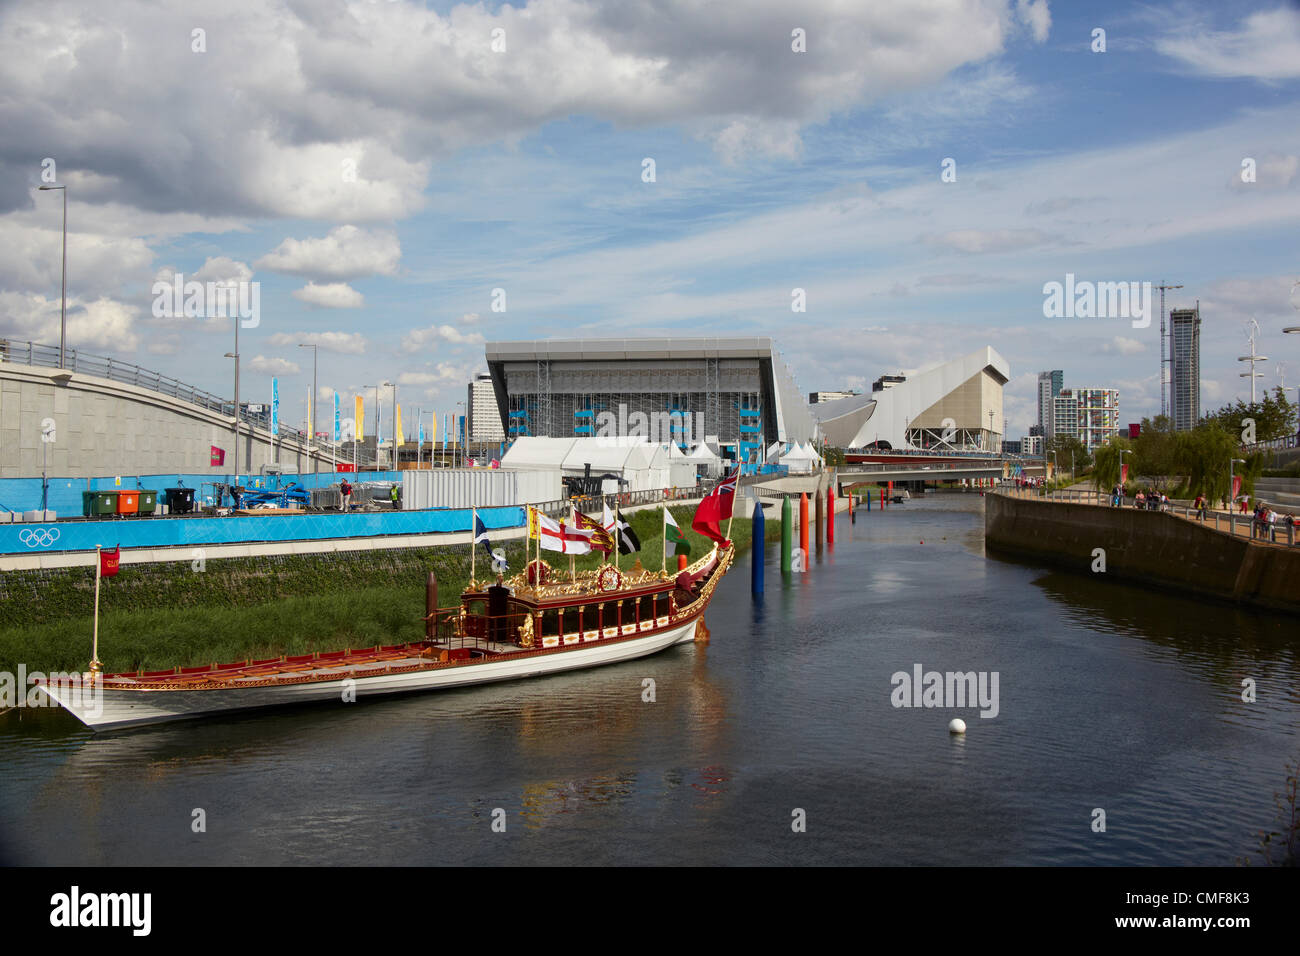 Royal barcaza en río Lea en el Parque Olímpico, el sitio de los Juegos Olímpicos de Londres 2012, Stratford London E20, REINO UNIDO Foto de stock